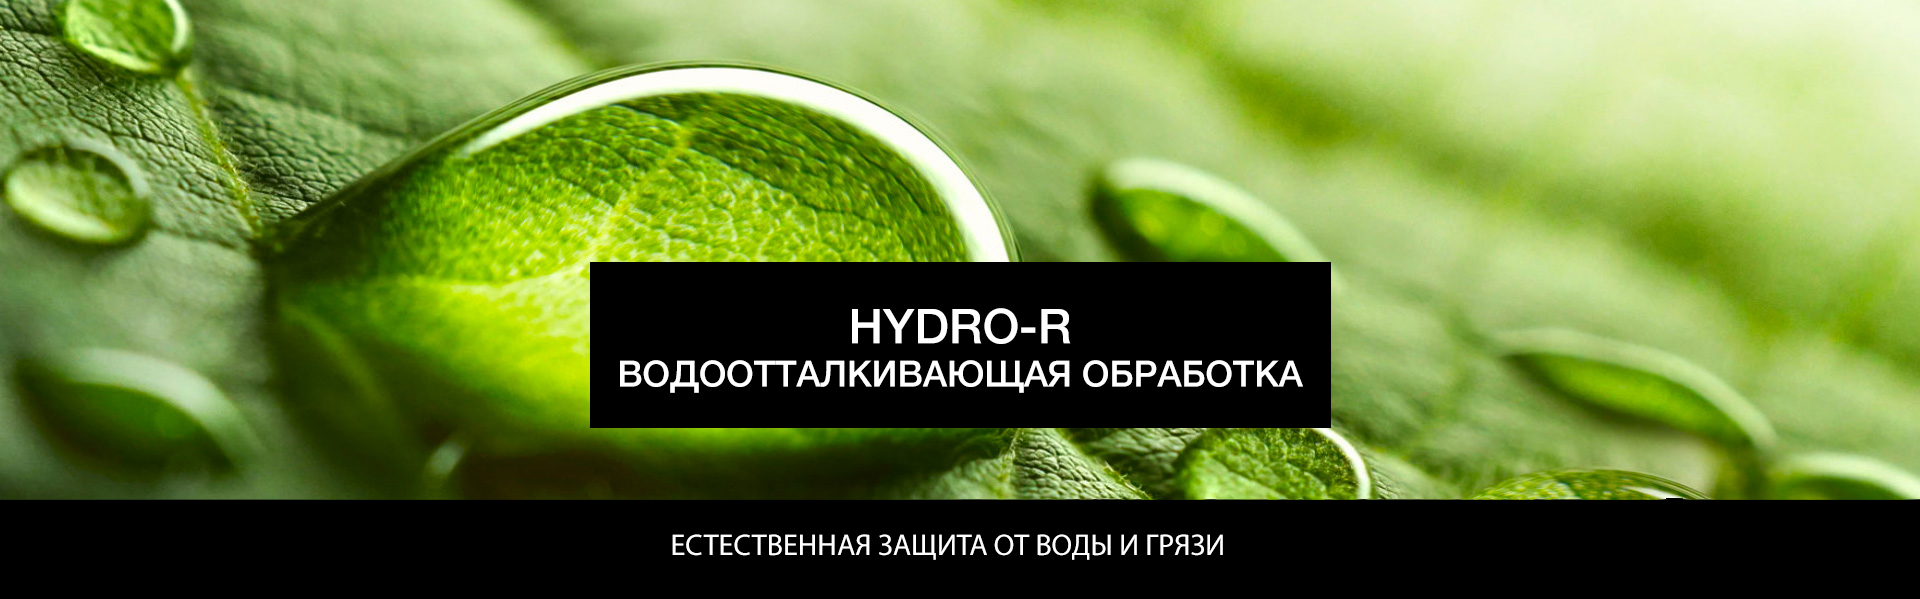 HYDRO-R HYDRO REPELLENT TREATMENT